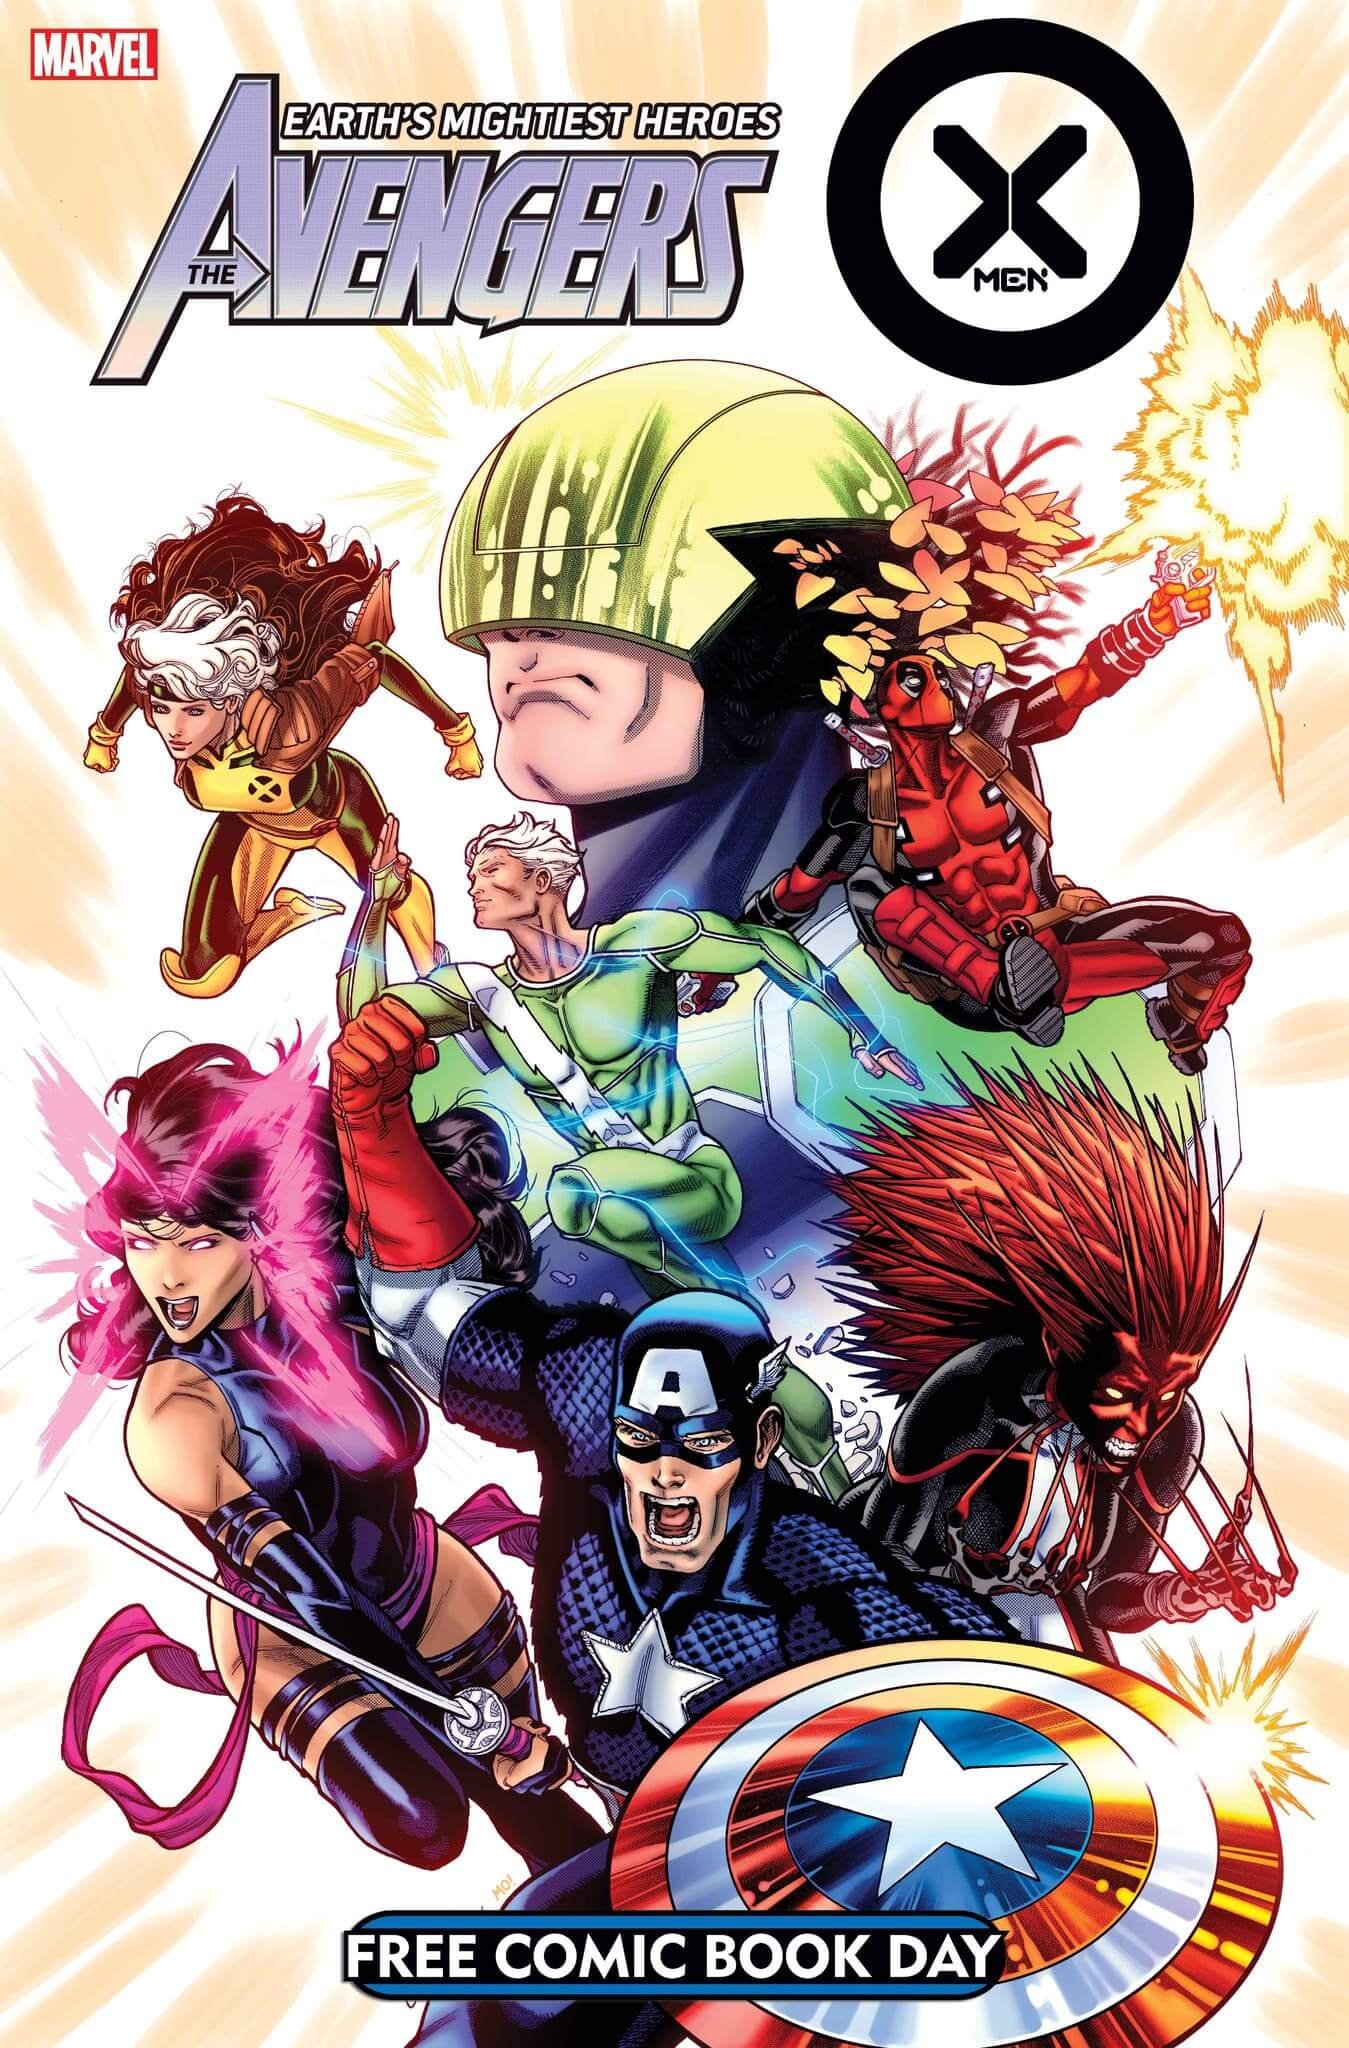 Couverture du Free Comic Book Day 2023 : Avengers/X-Men par Javier Garron